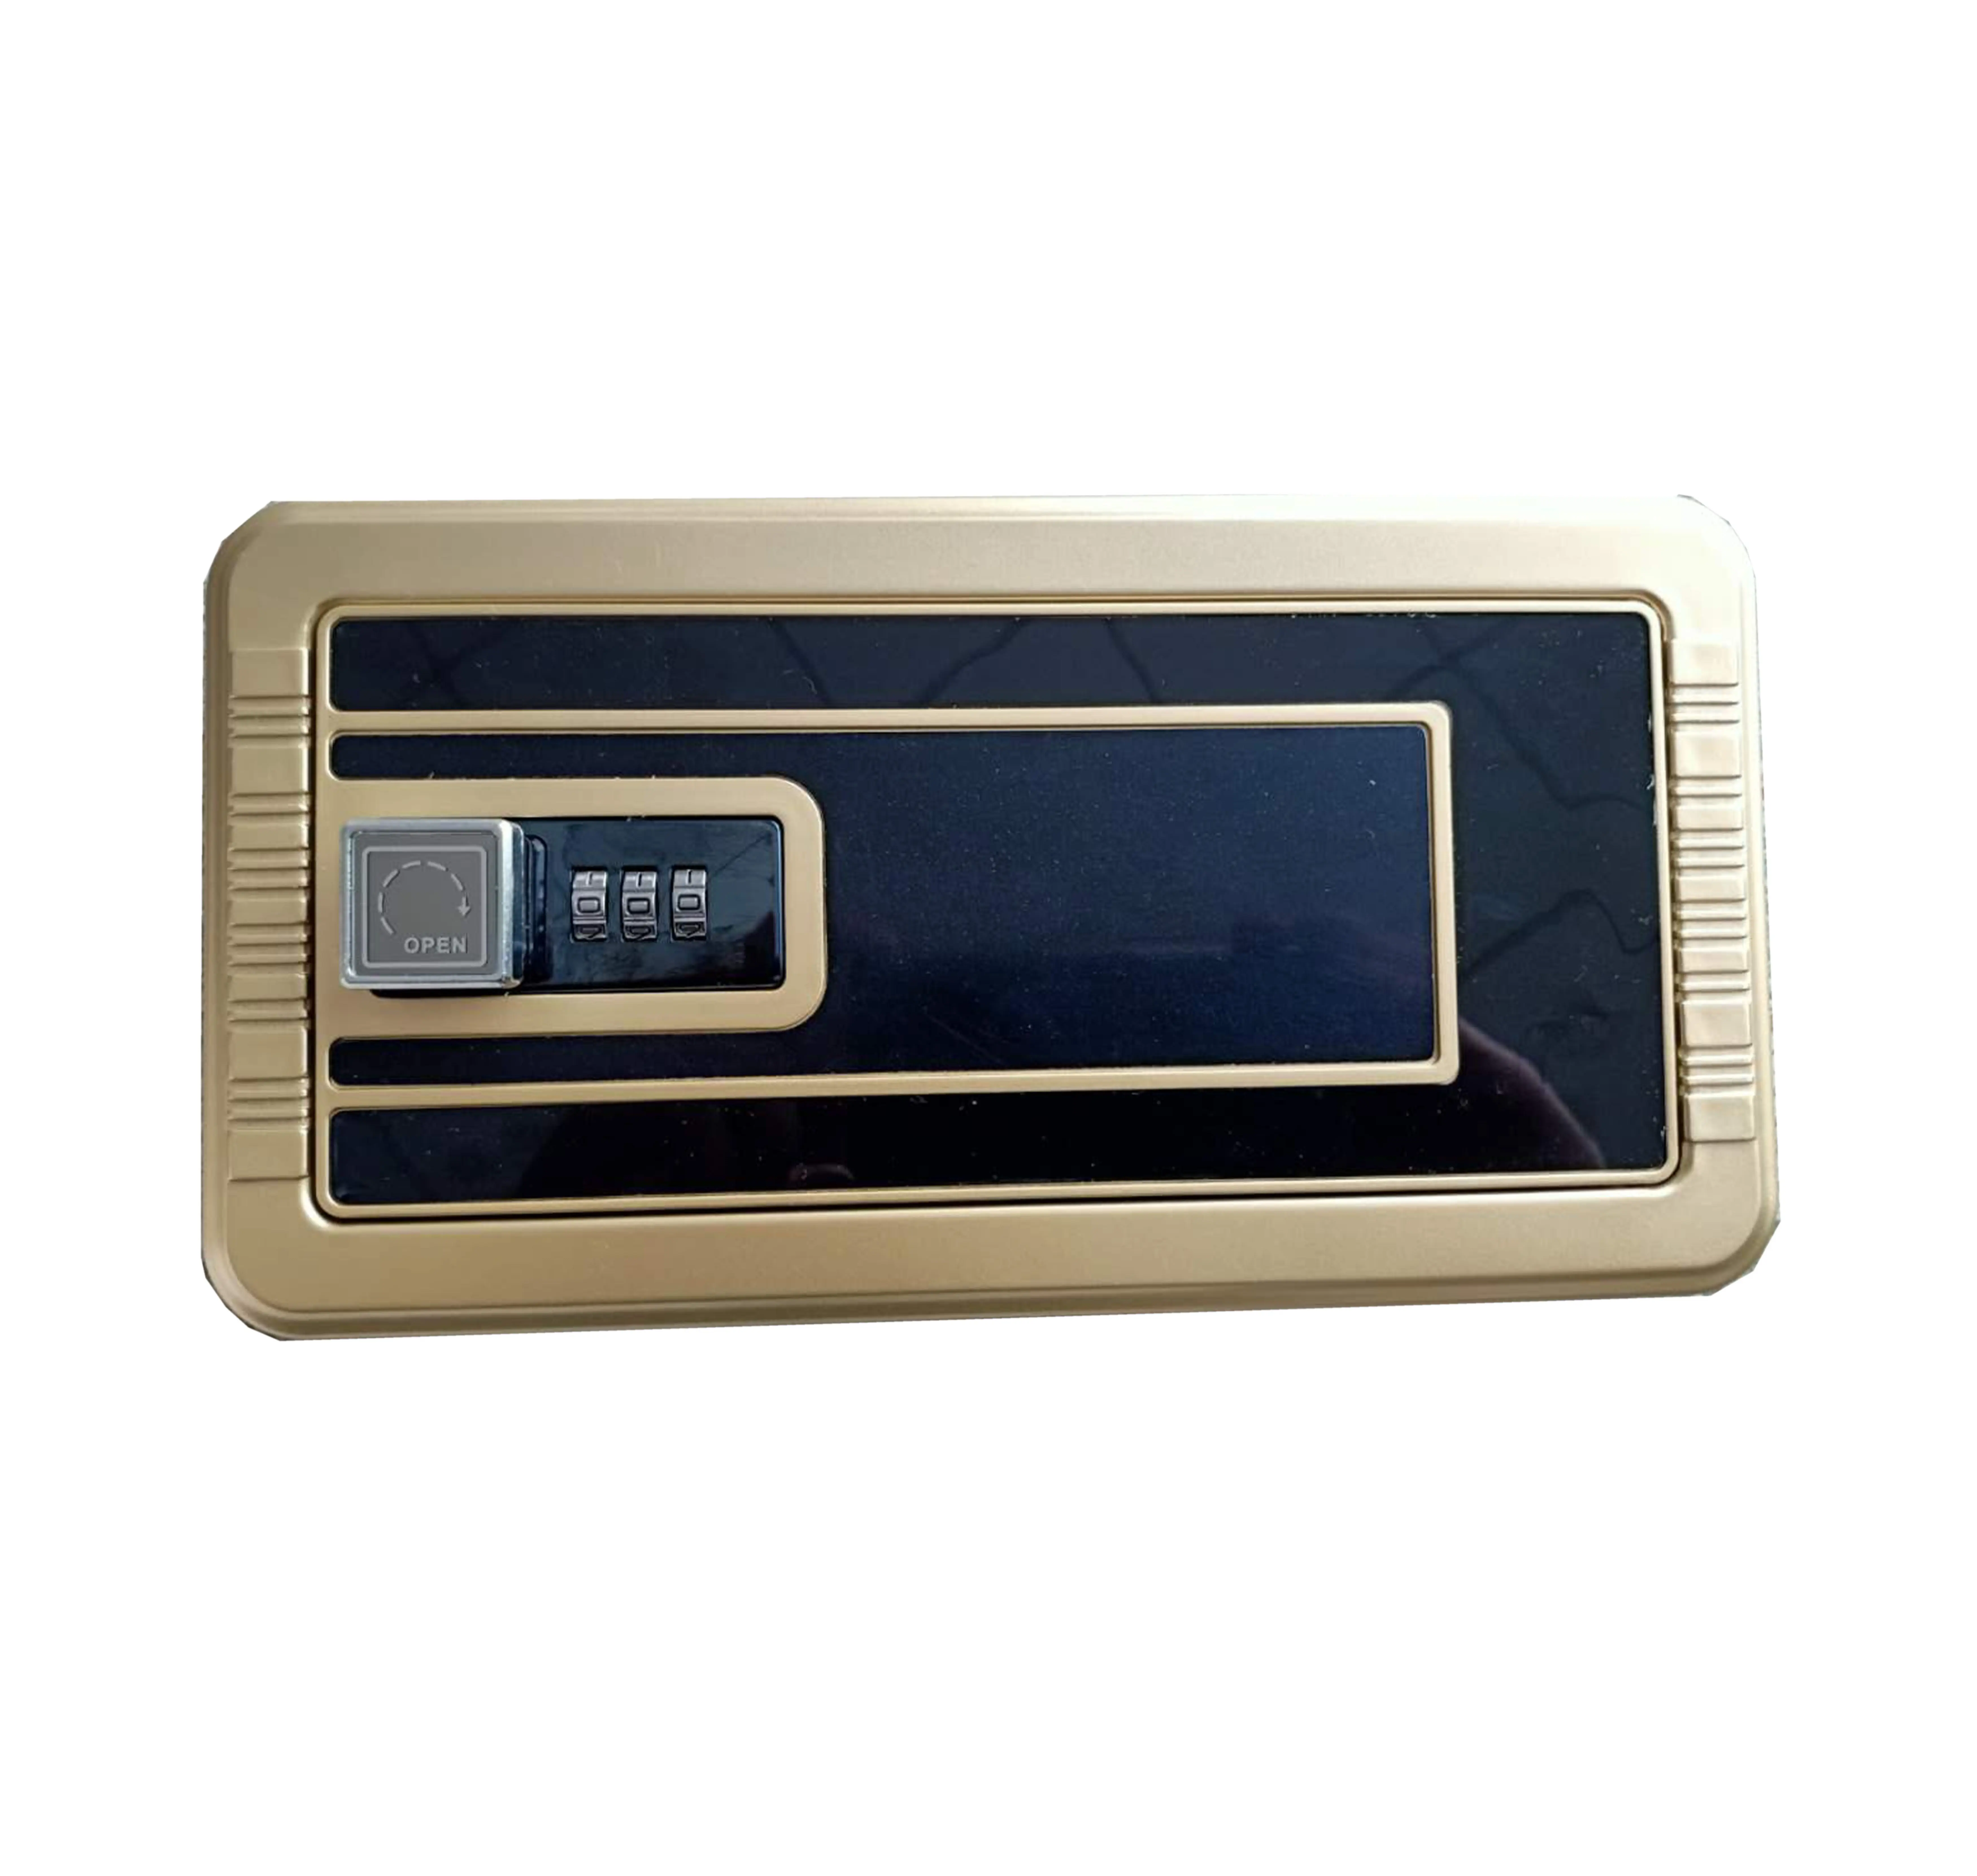 Inner Door LS-D02 ABS plastic drawer with lock for safe box, inner door of safe cabinet / Mezzanine door